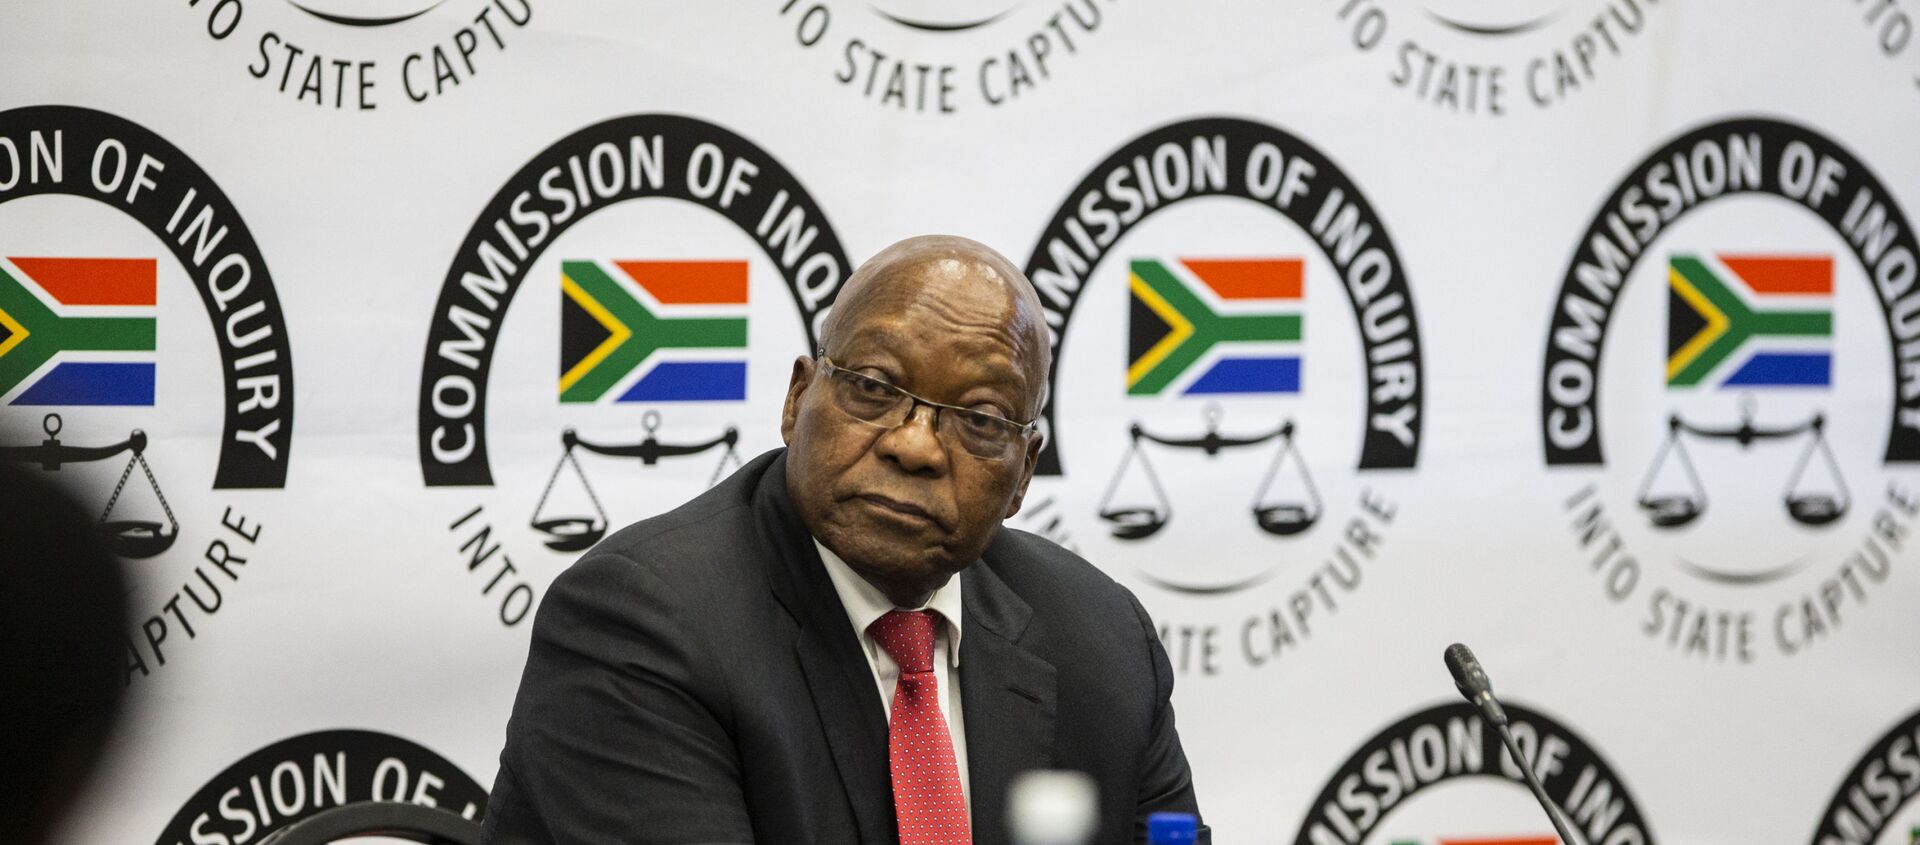 Güney Afrika’nın eski Devlet Başkanı Jacob Zuma, yolsuzluk suçlamaları hakkında soruşturma komisyonunda ifade verdi. - Sputnik Türkiye, 1920, 15.07.2019